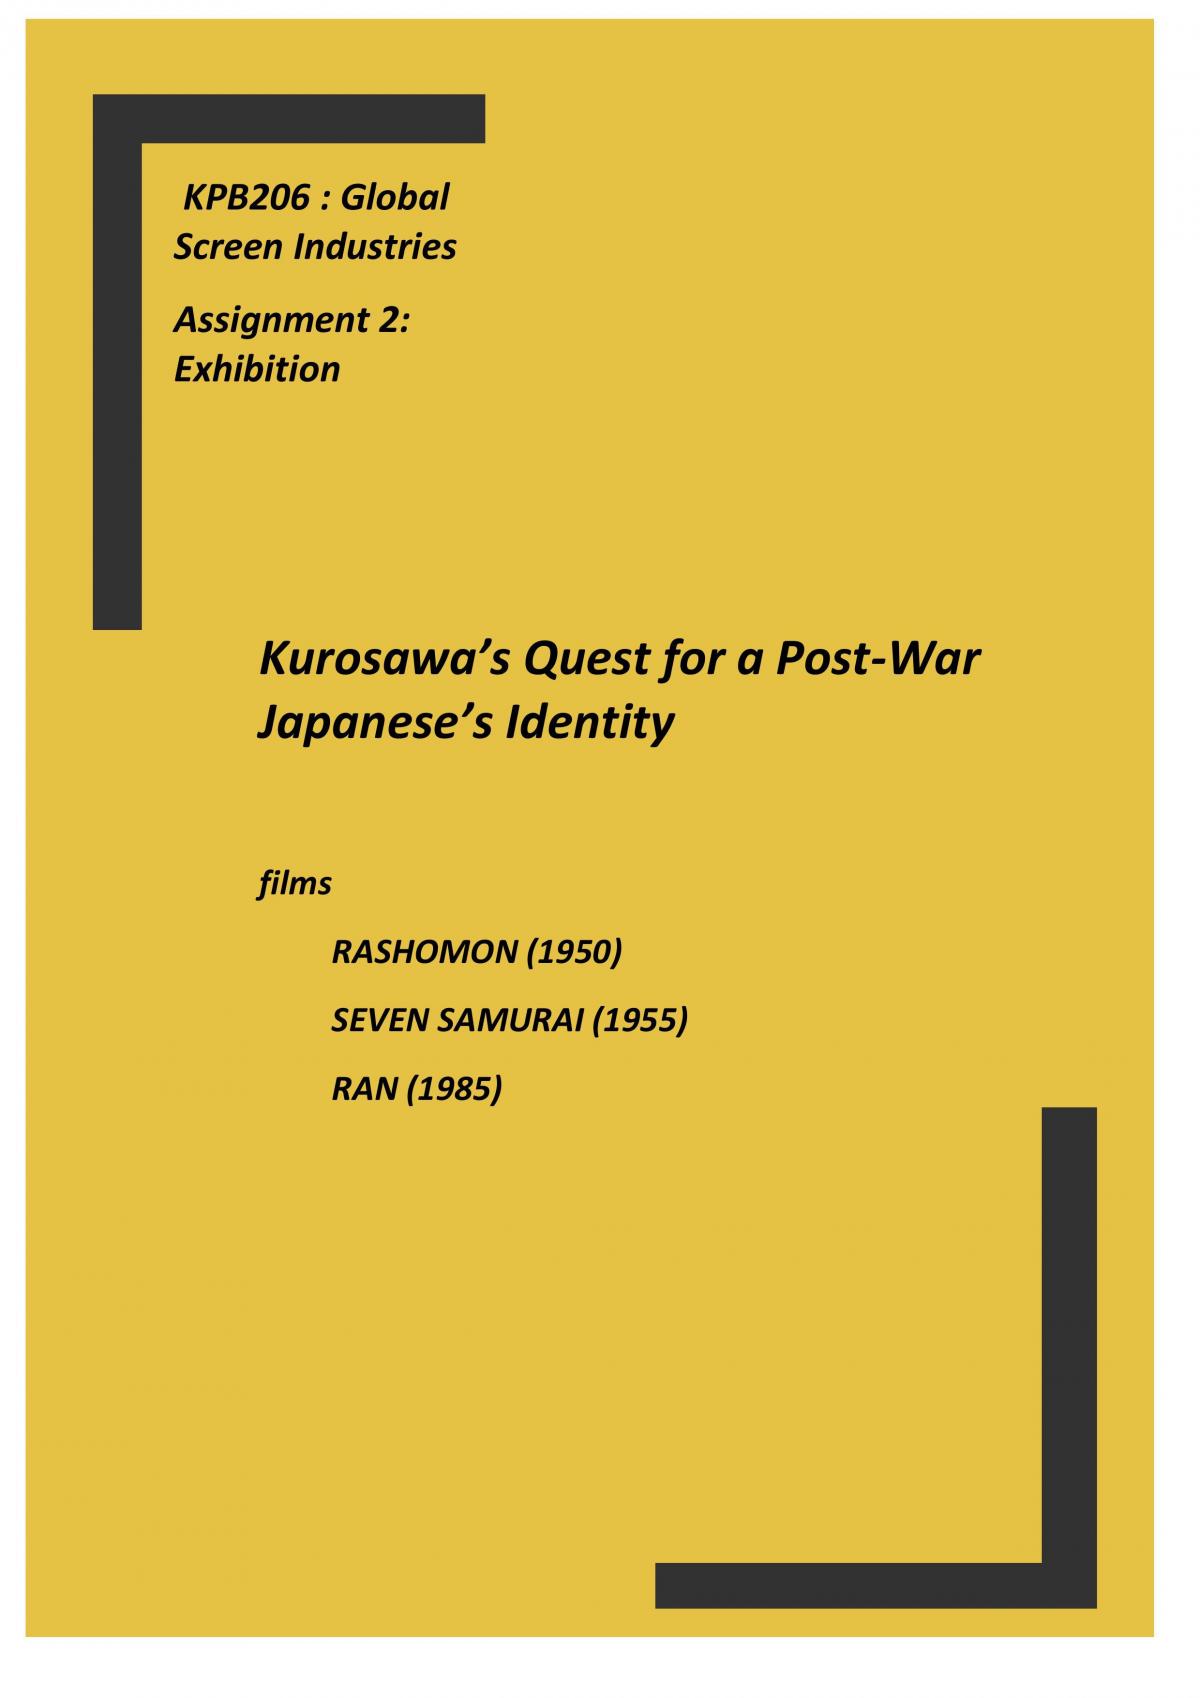 KPB2016 Akira Kurosawa Global Screen Exhibition - Page 1